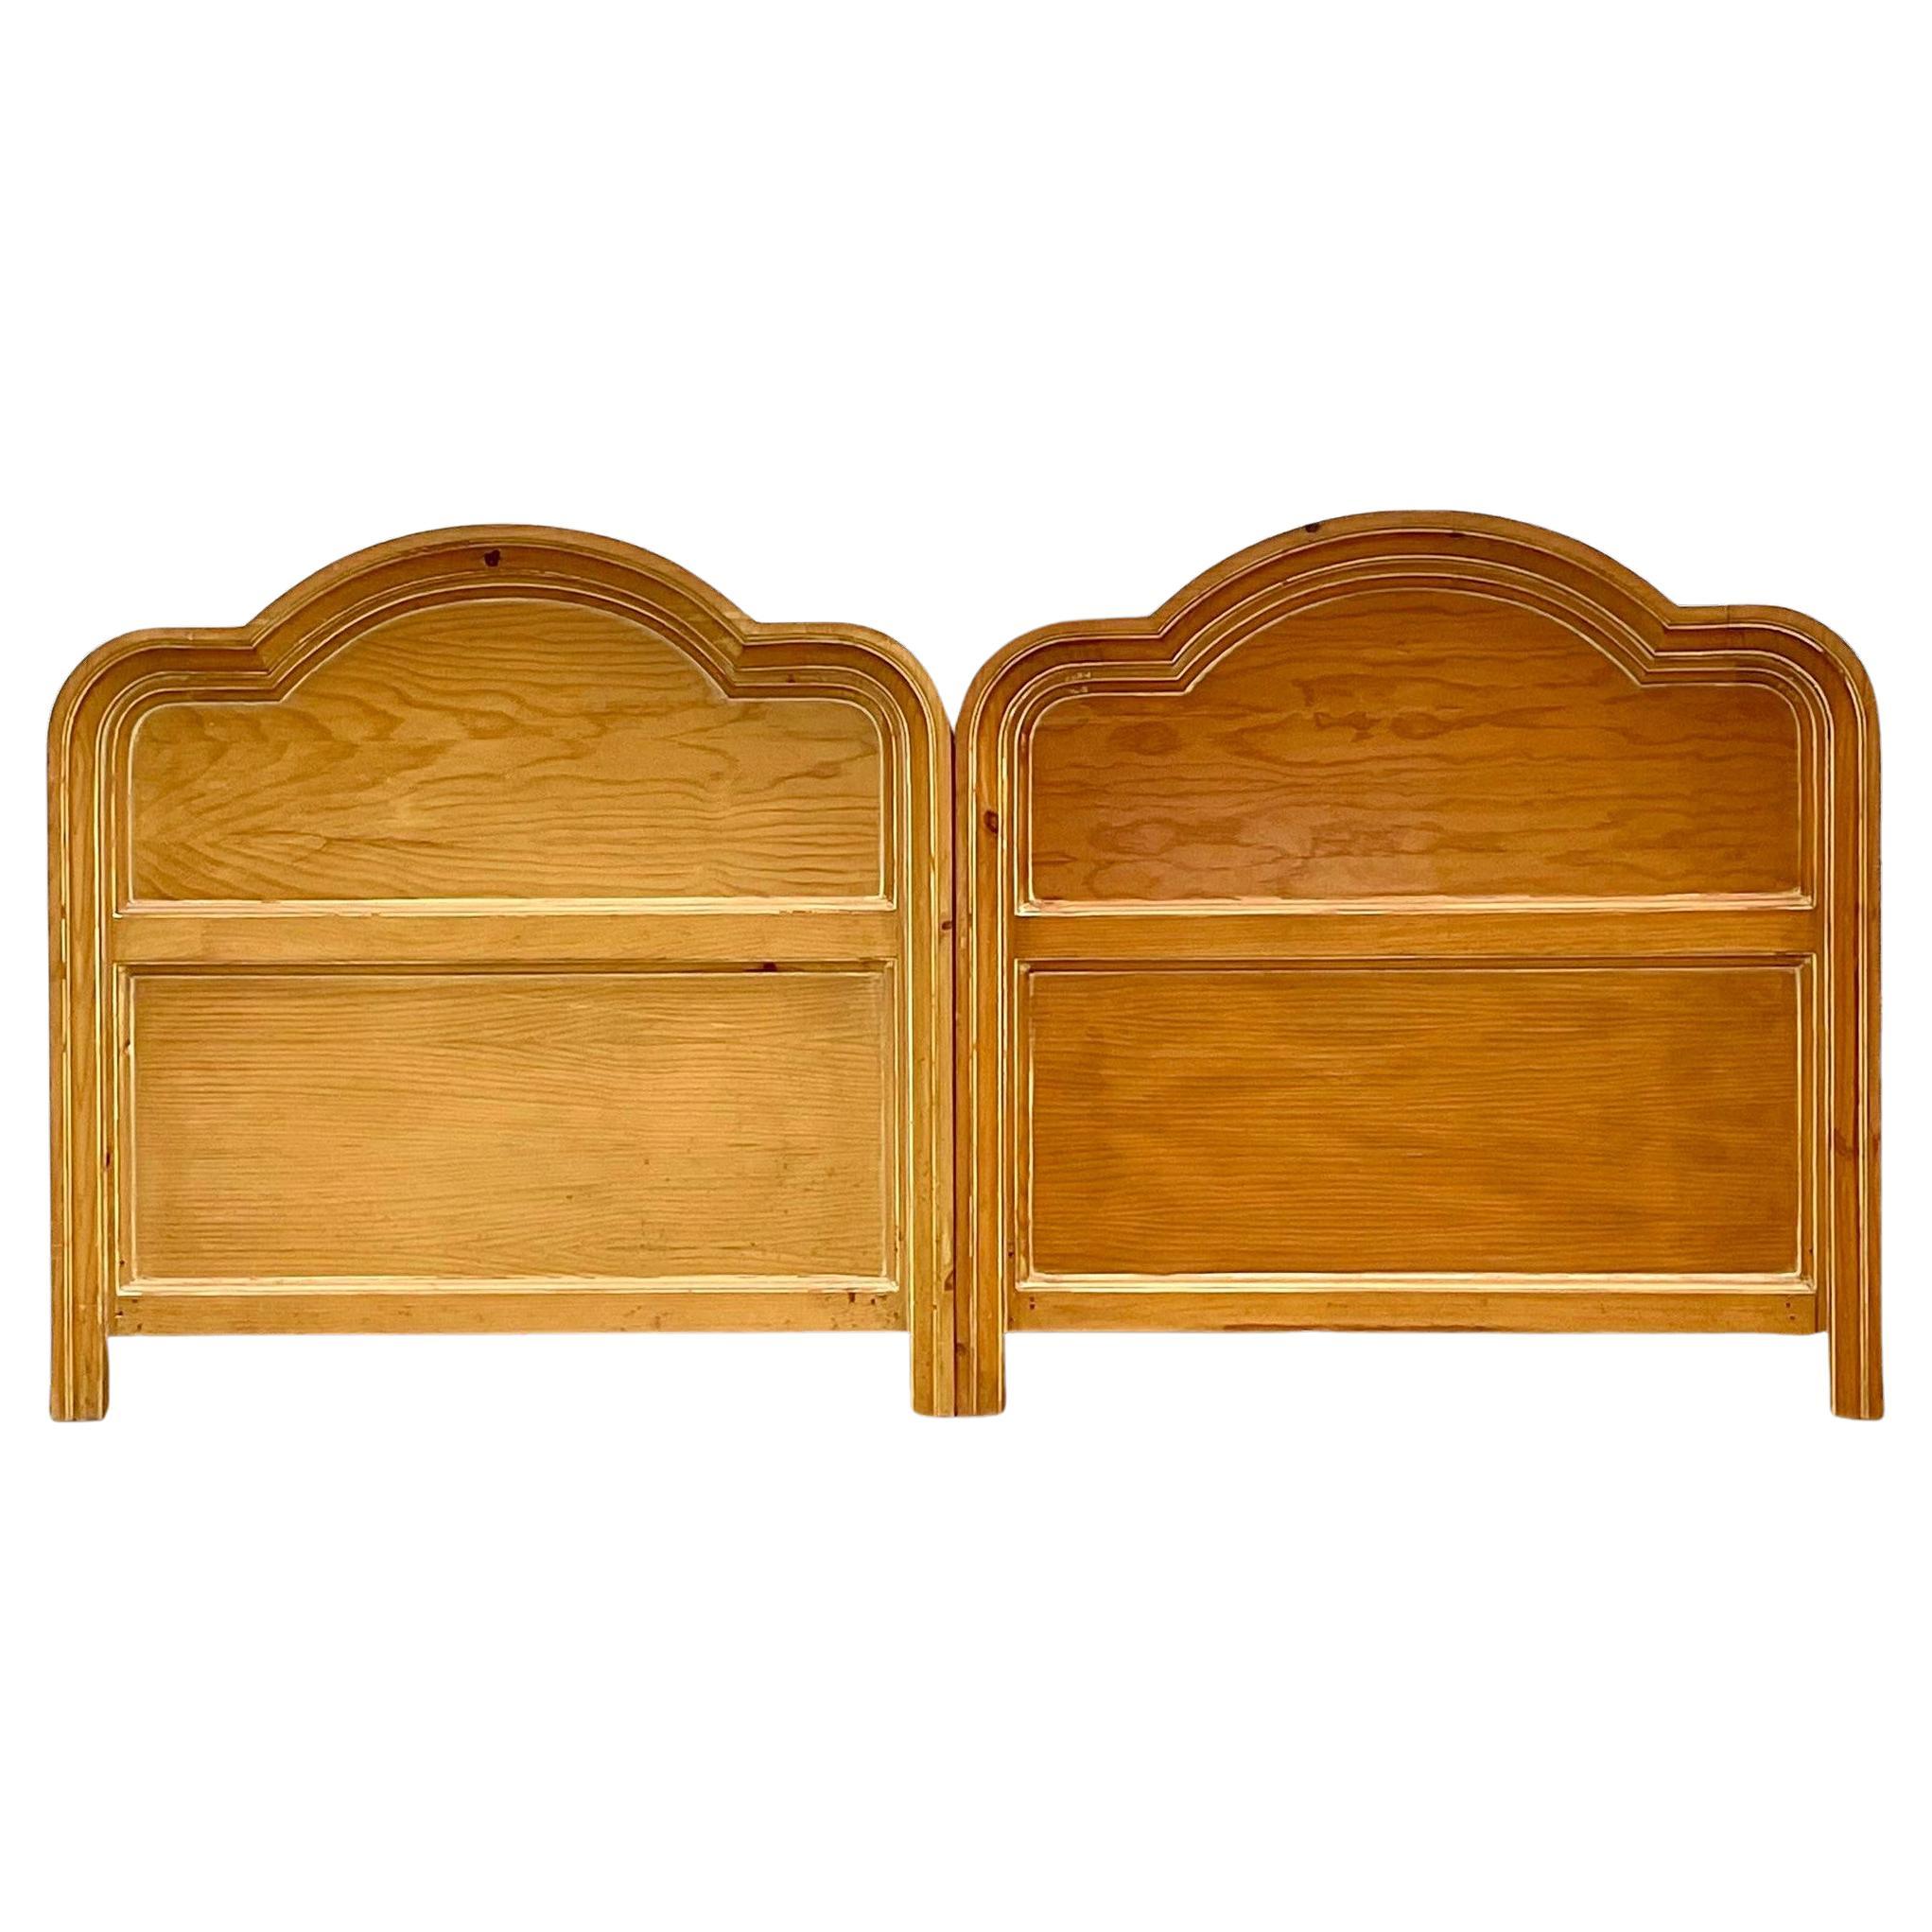 Fin du 20ème siècle Vintage Tête de lit double en bois avec décorations - une paire